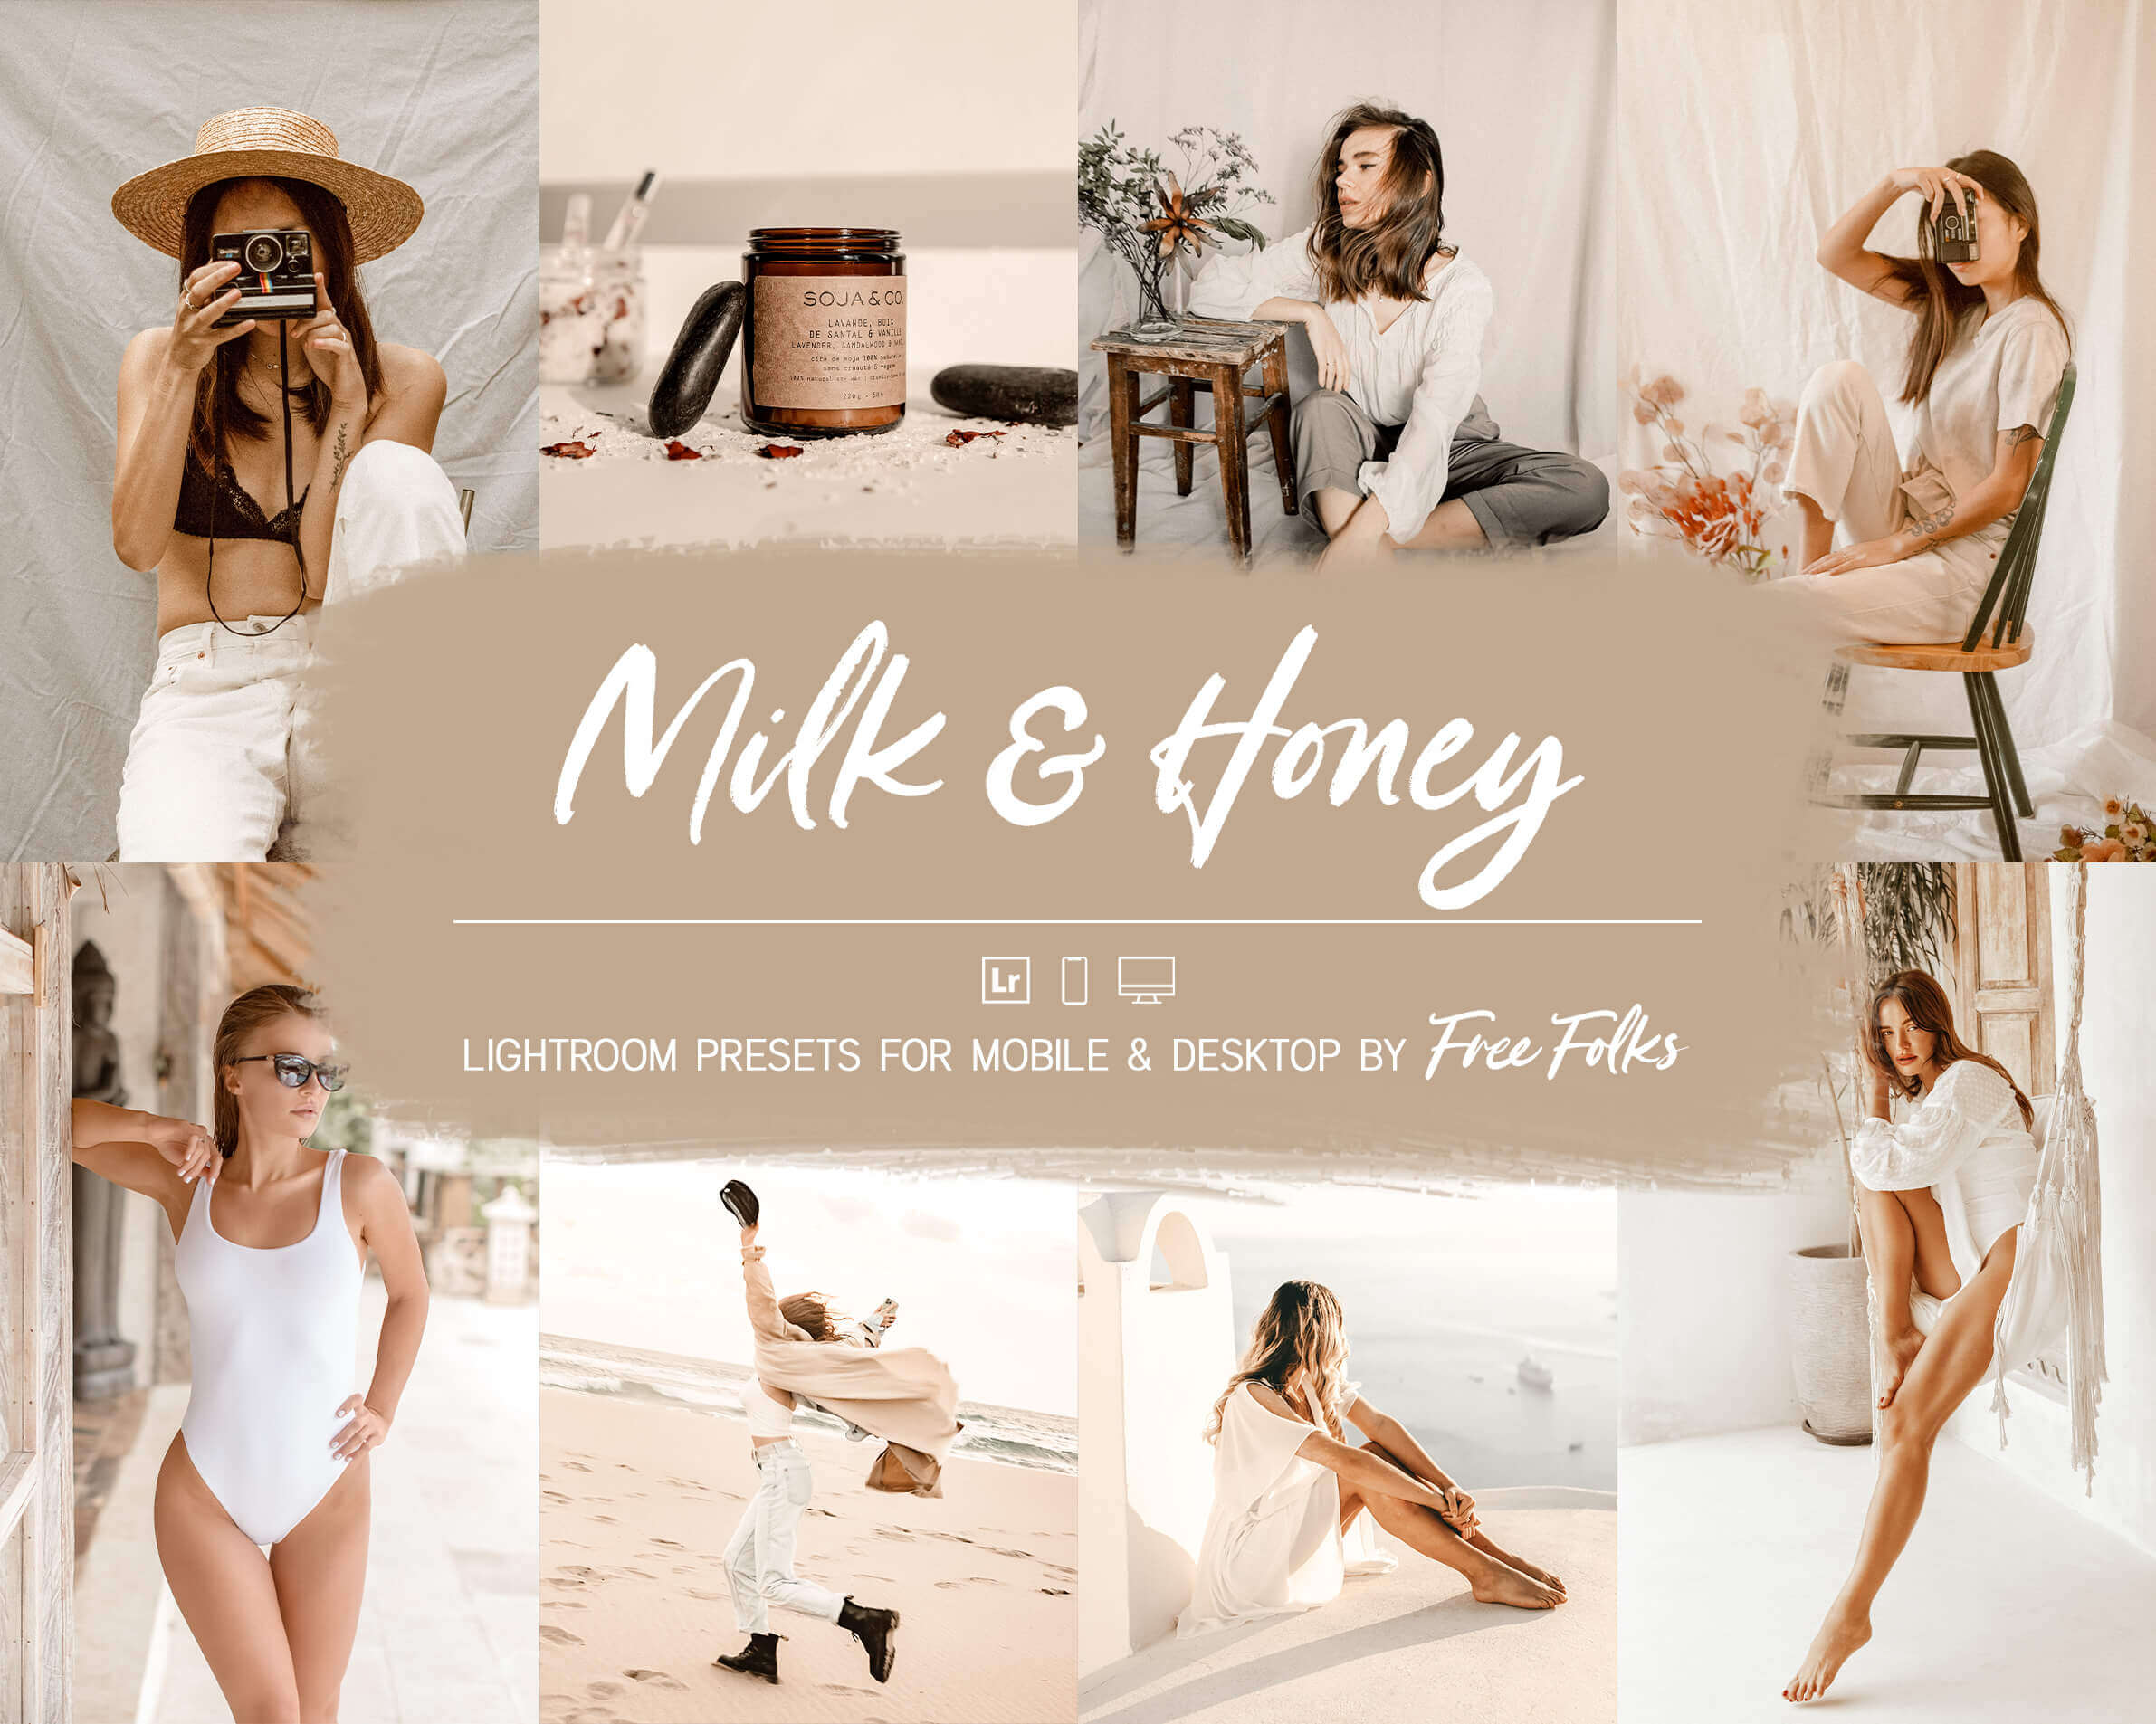 12 Milk & Honey Lightroom Presets For Mobile & Desktop